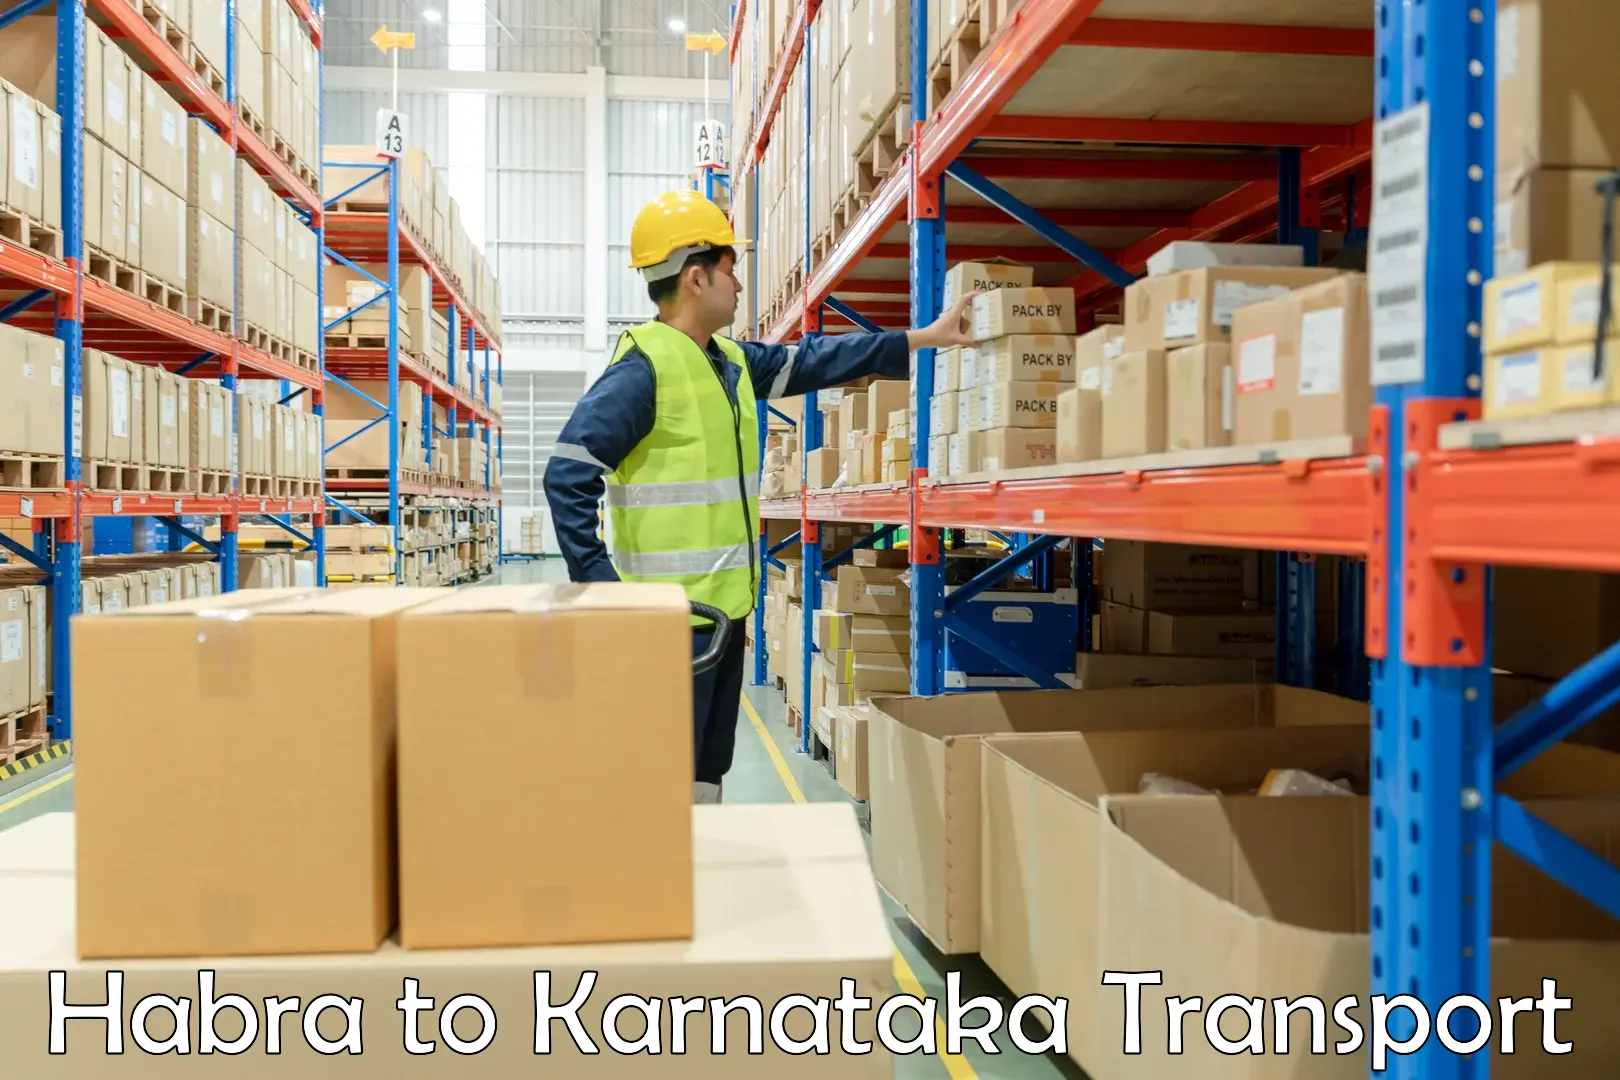 International cargo transportation services Habra to Gurmatkal